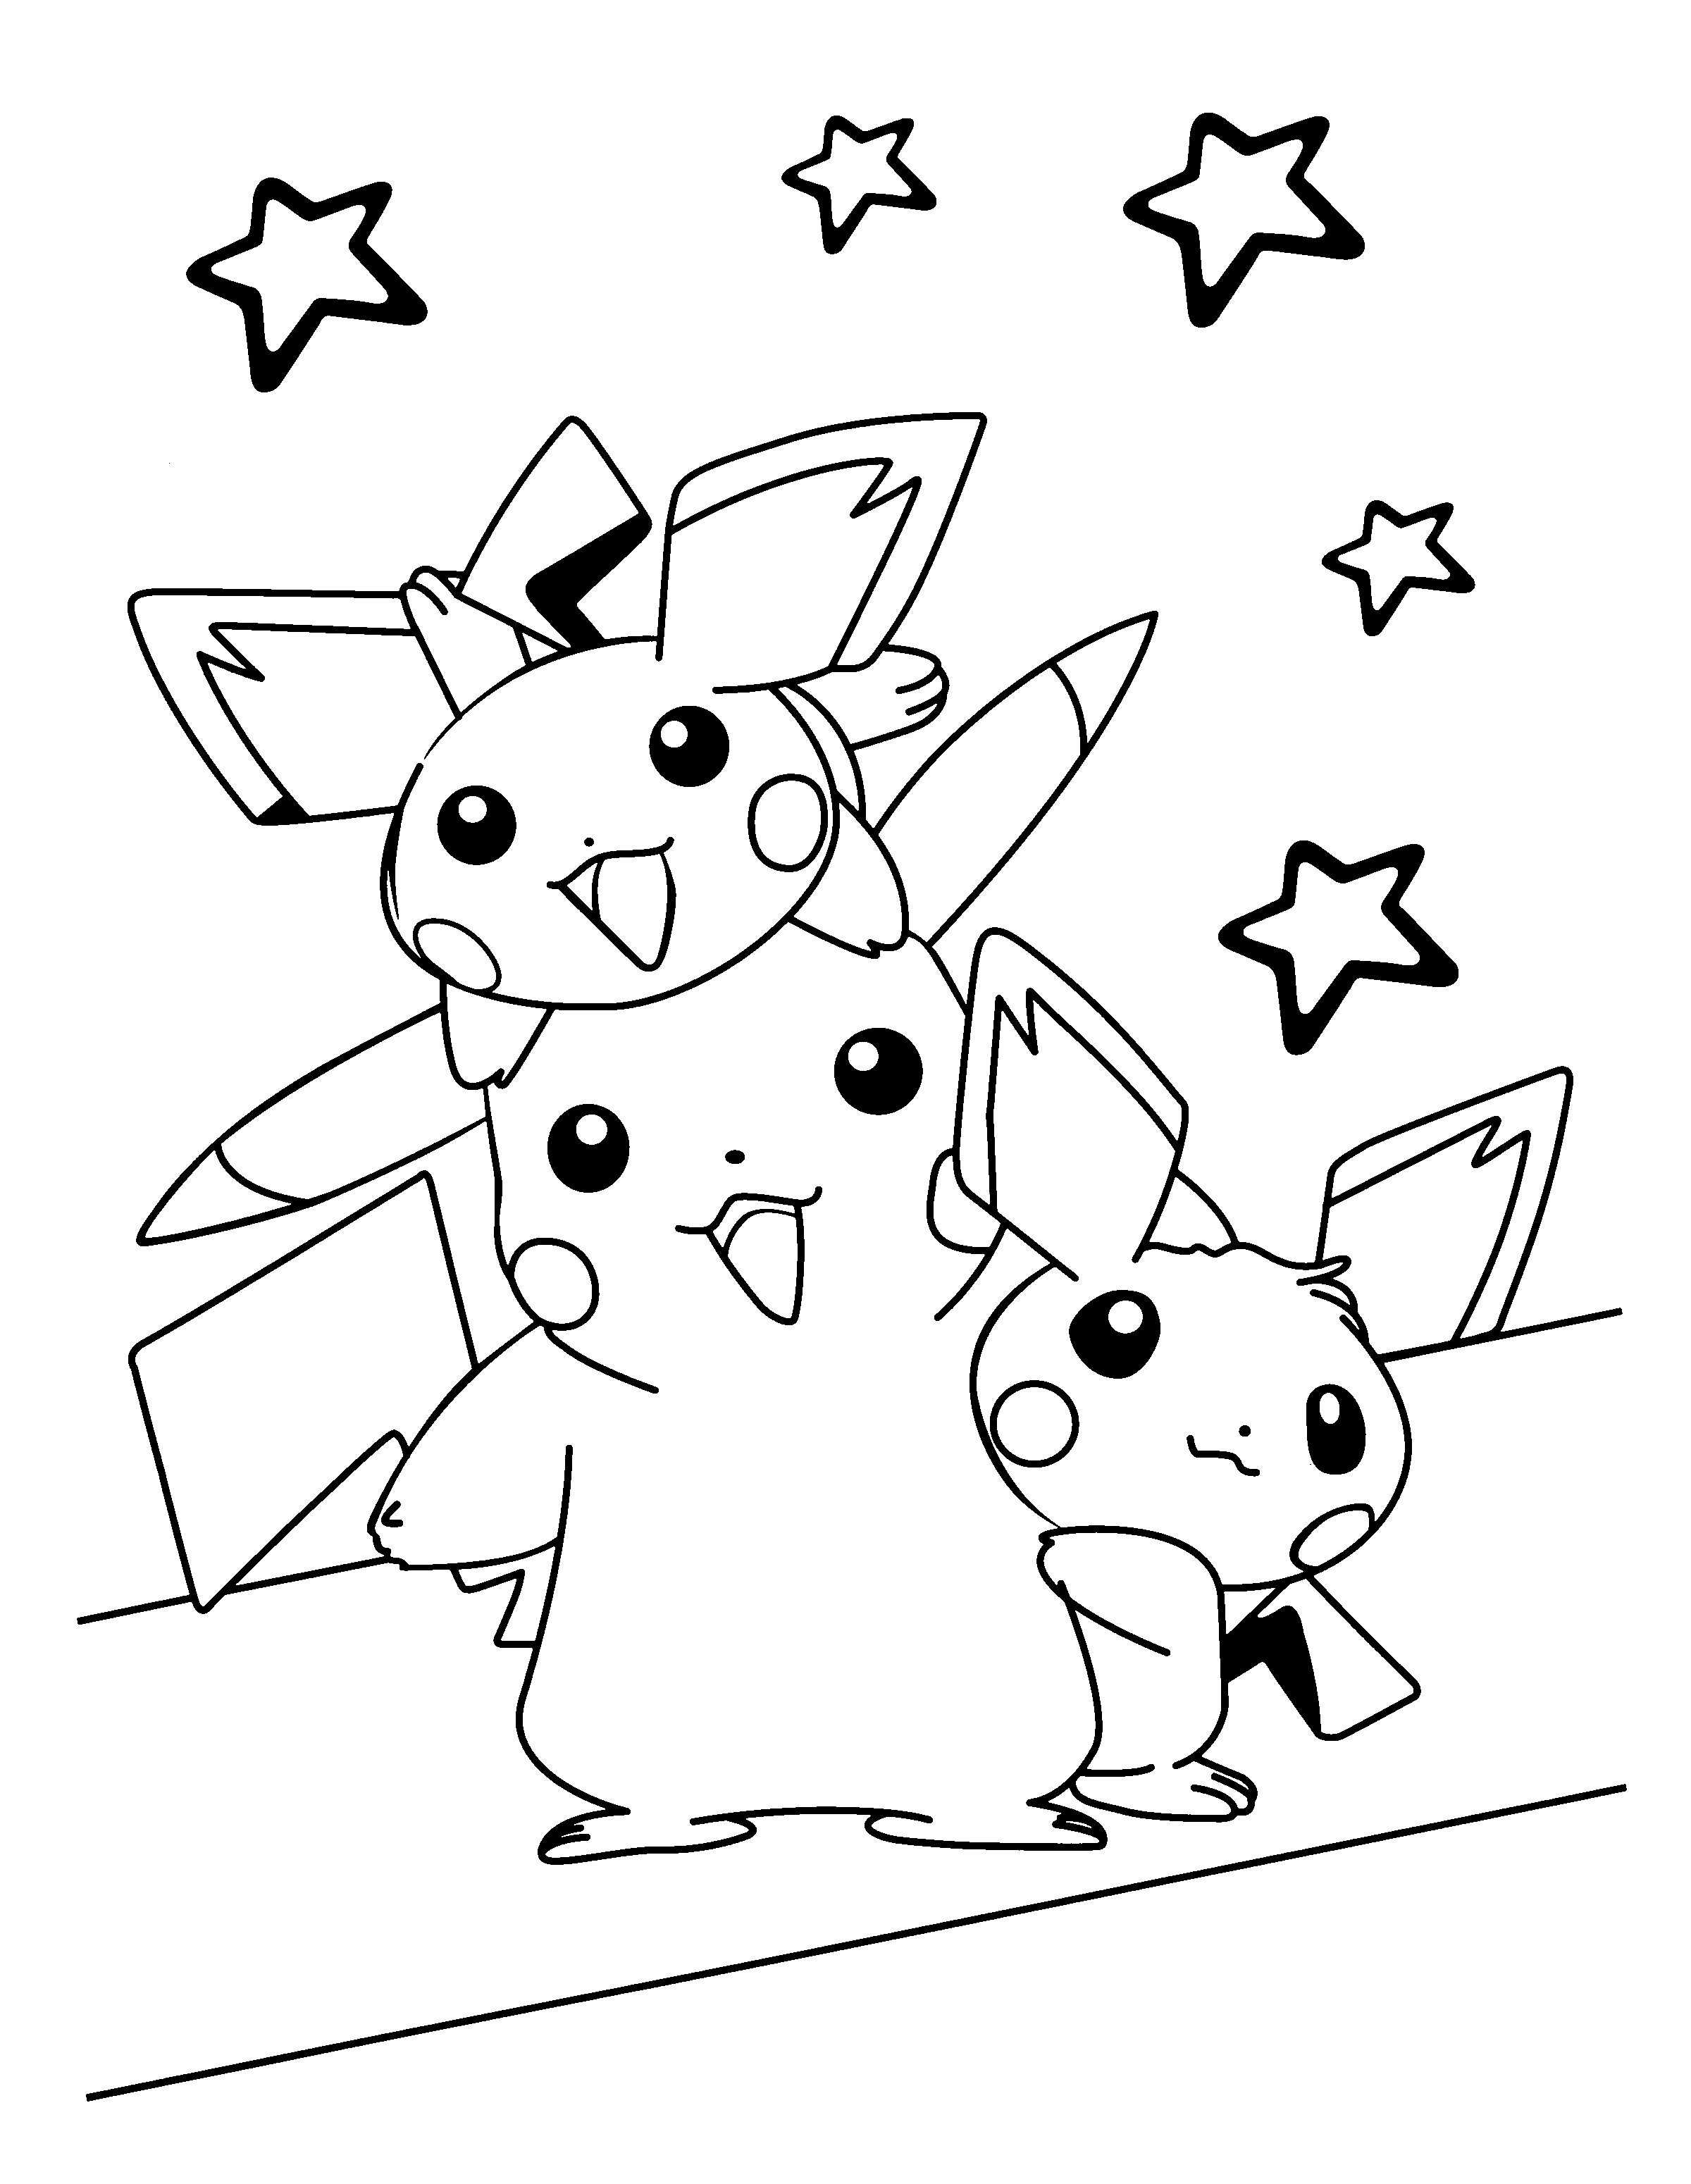 dibujo-para-colorear-pokemon-imagen-animada-0078